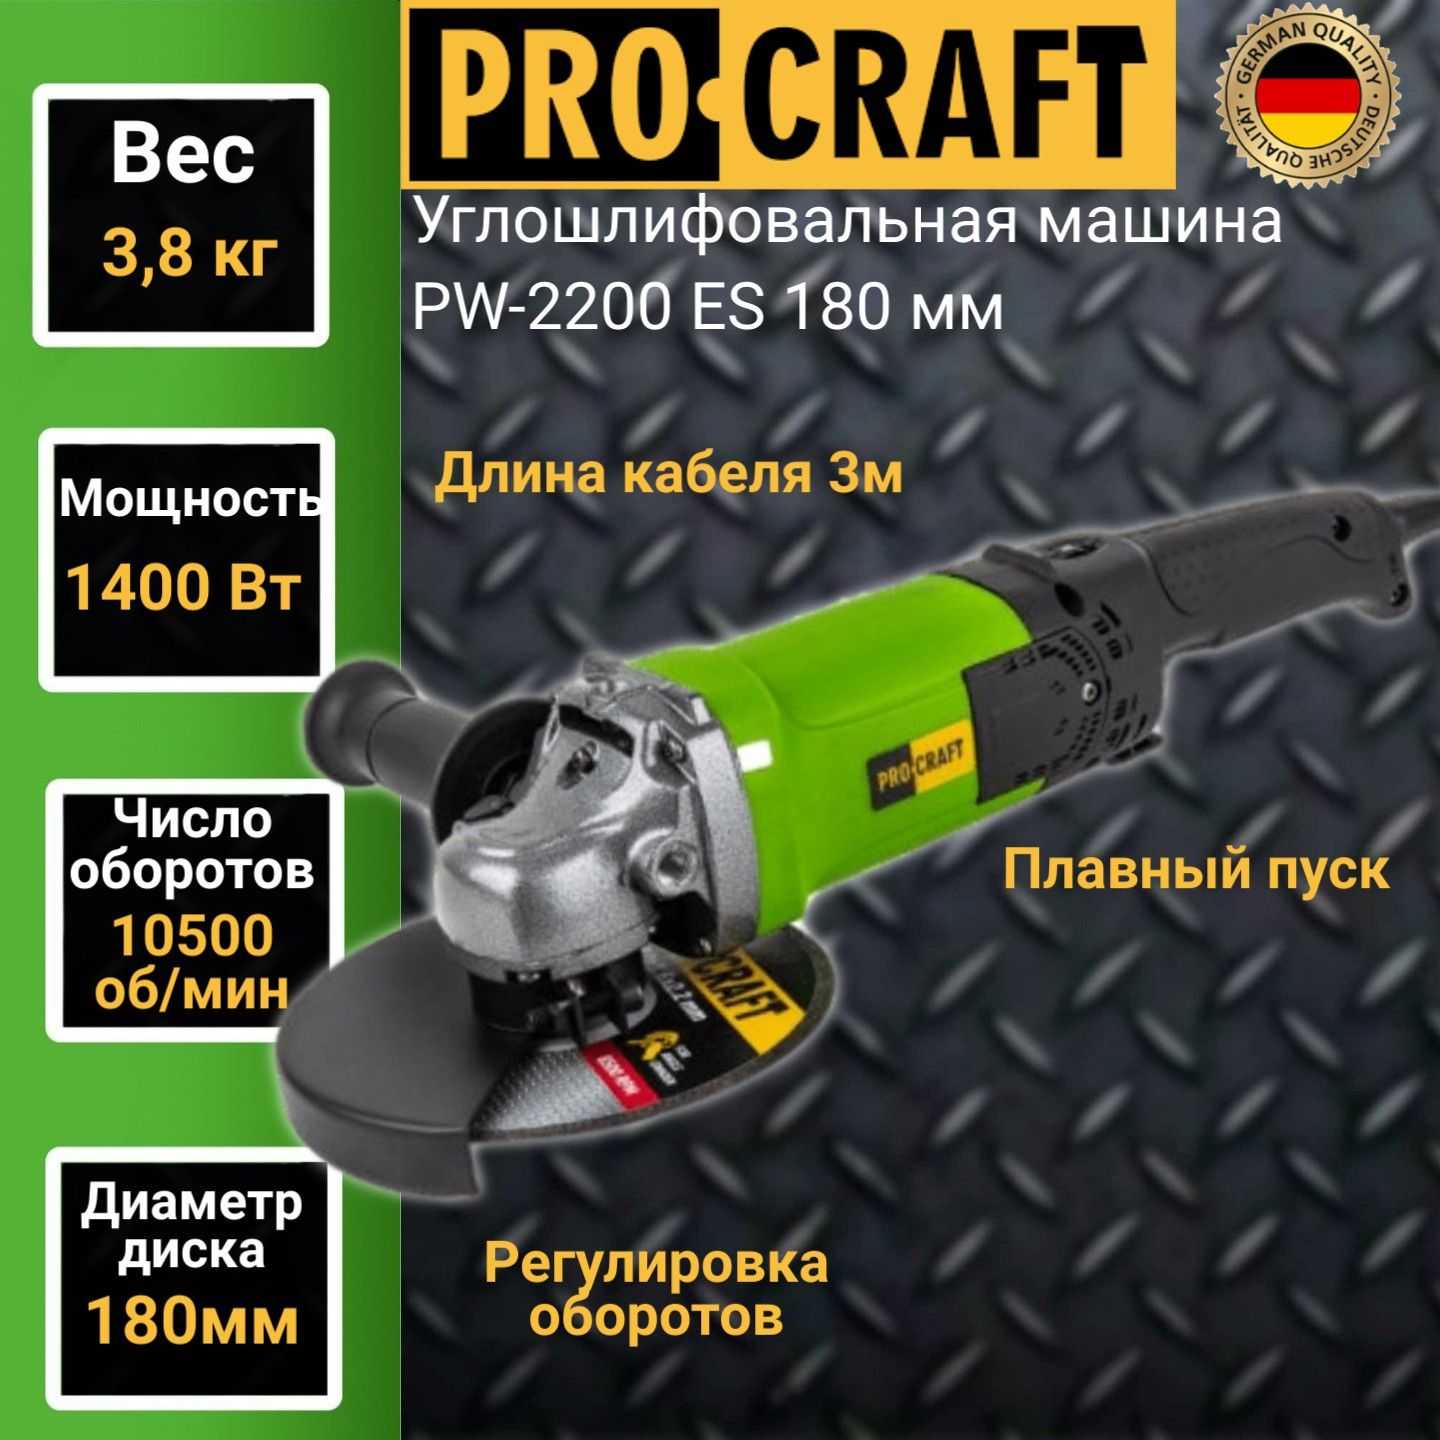 Углошлифовальная машина болгарка Procraft PW-2200ЕS, 180мм круг, 1400Вт, 10500об/мин углошлифовальная машина kress ku801 9 без акб и зу